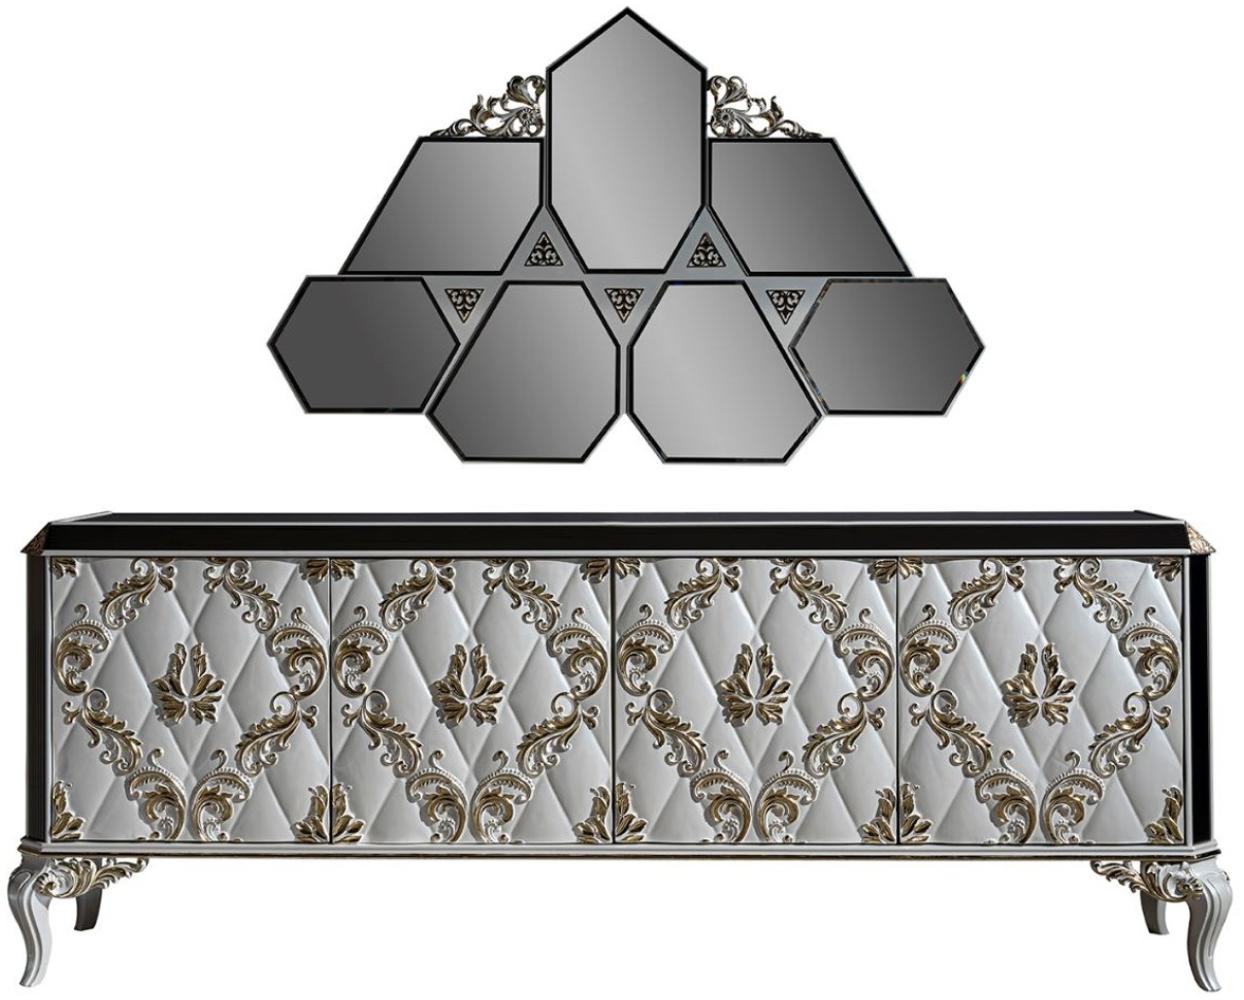 Casa Padrino Luxus Barock Möbel Set Sideboard mit Spiegel Weiß / Gold / Schwarz - Edler Massivholz Schrank mit elegantem Wandspiegel - Möbel im Barockstil Bild 1